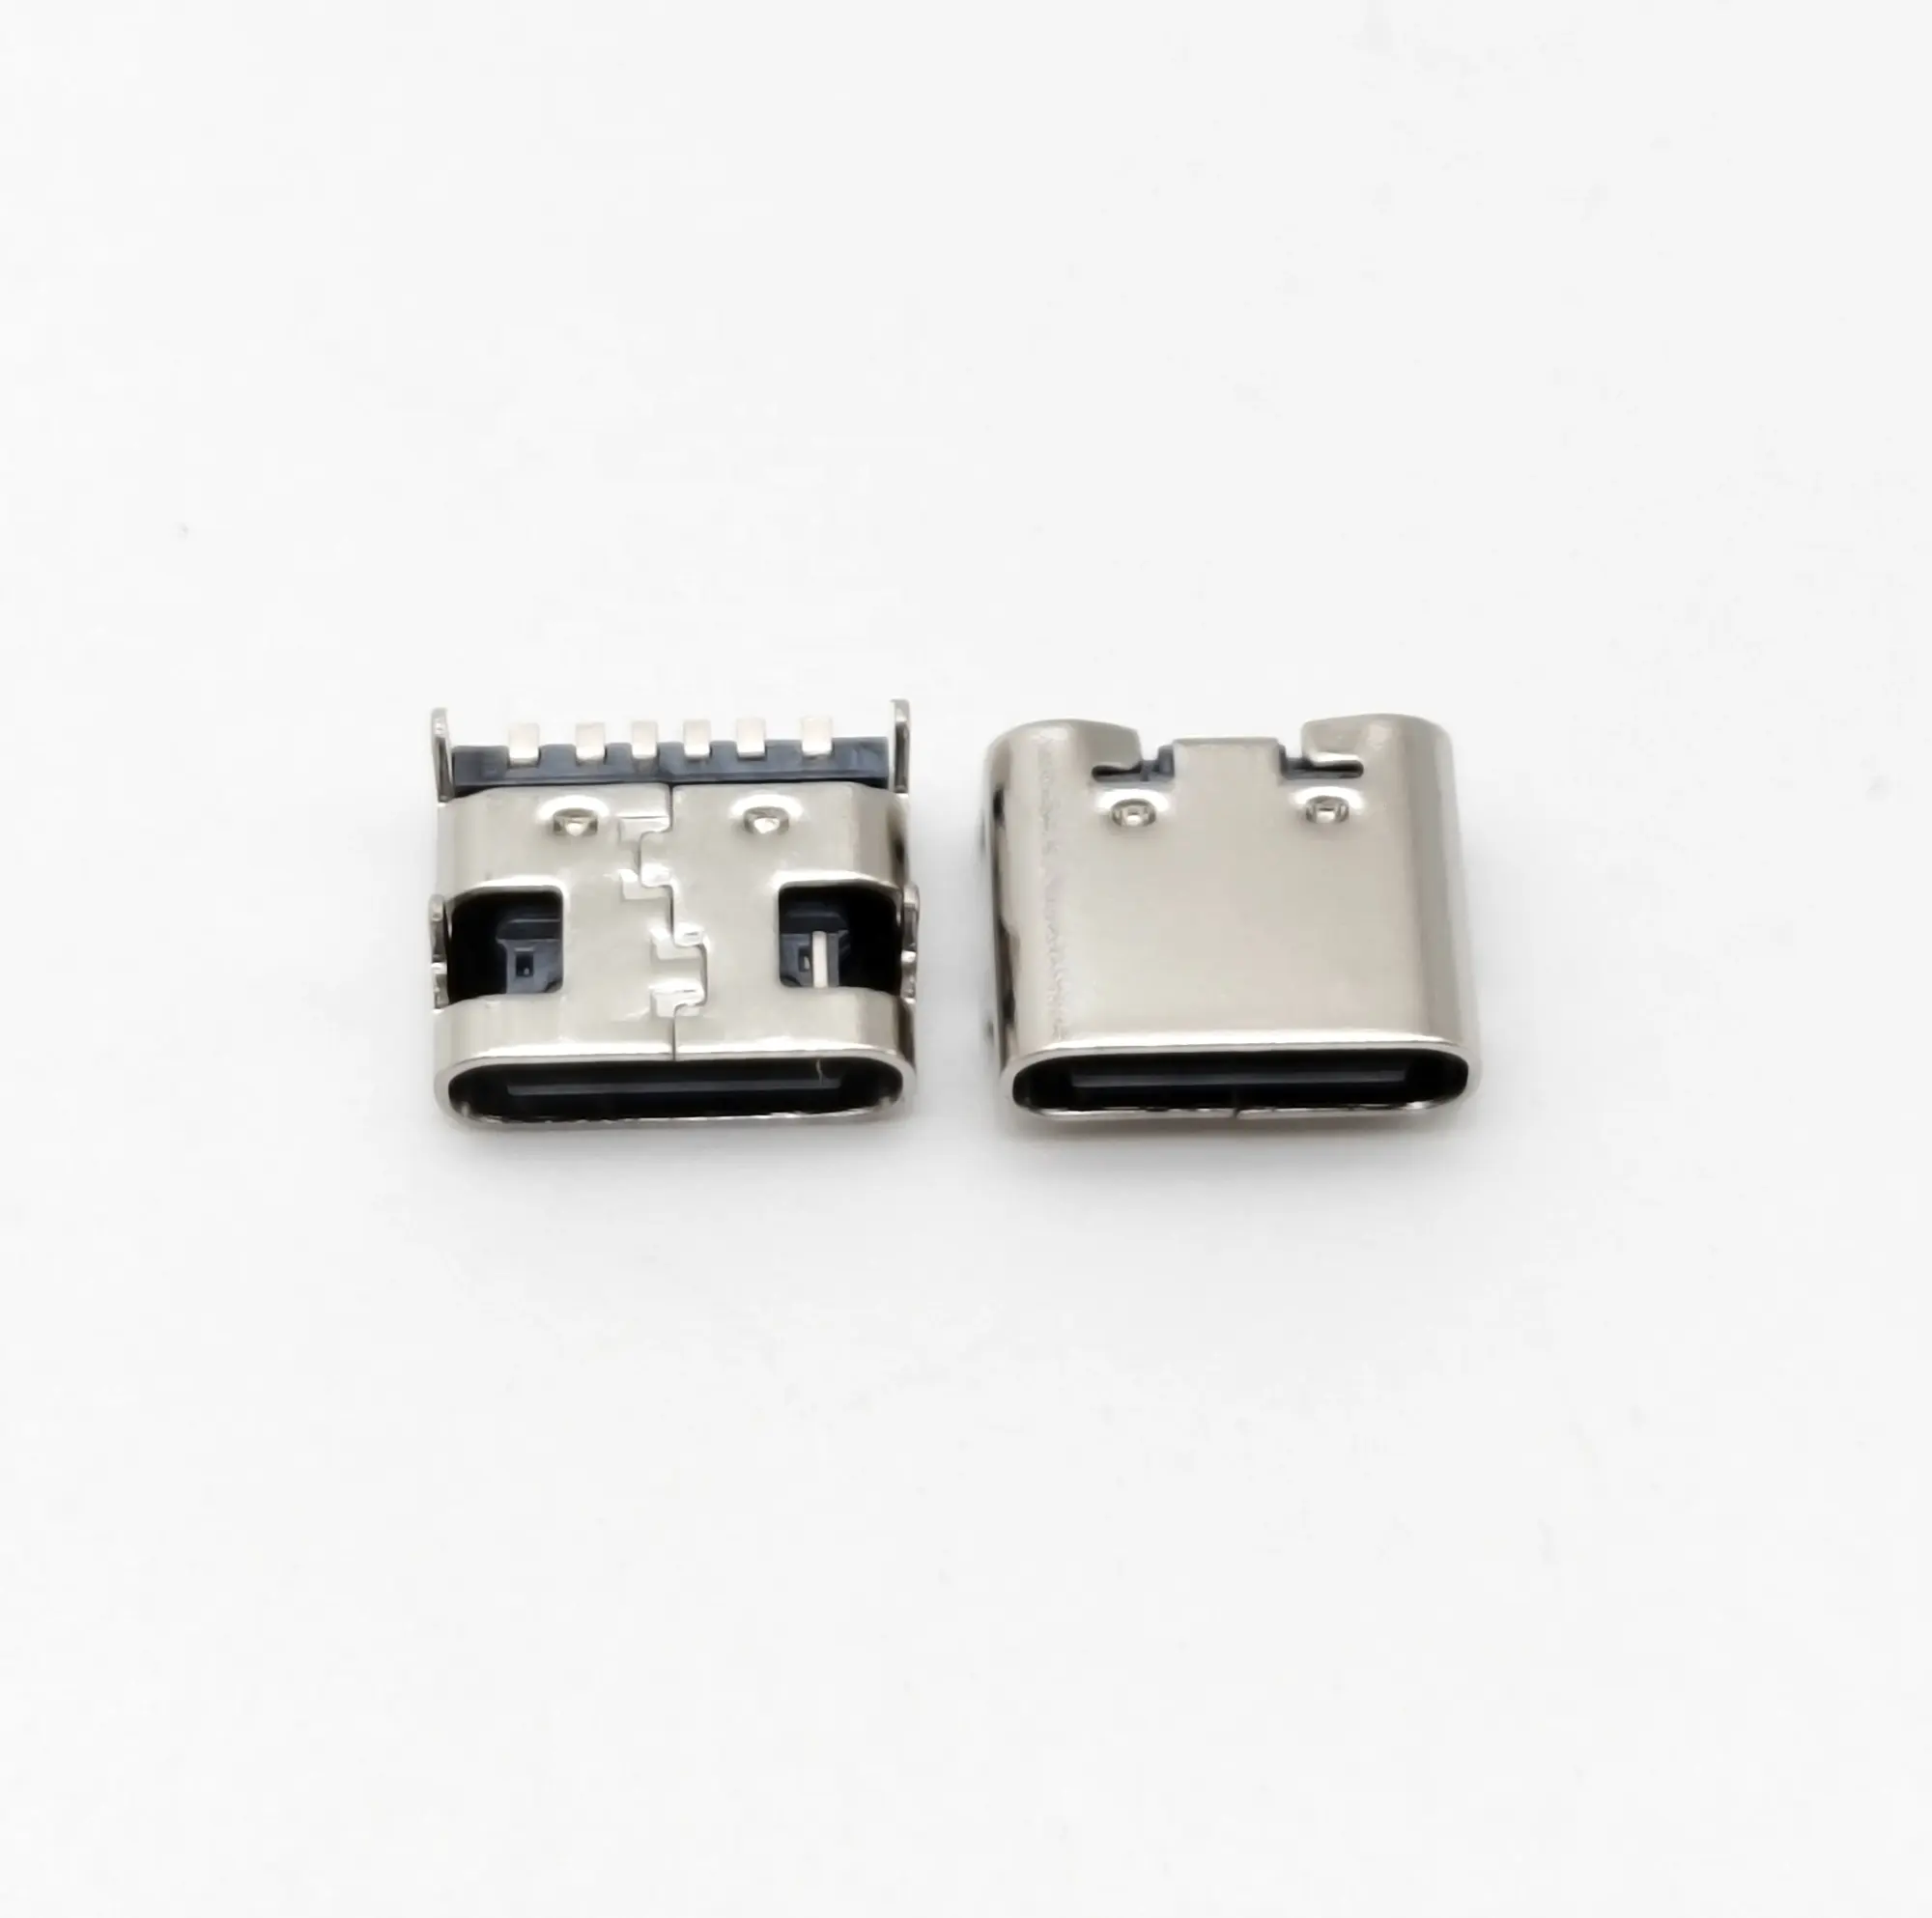 USB 6pin a fila singola tipo superiore PCB ricarica 6pin connettori sit SMT USB tipo C presa